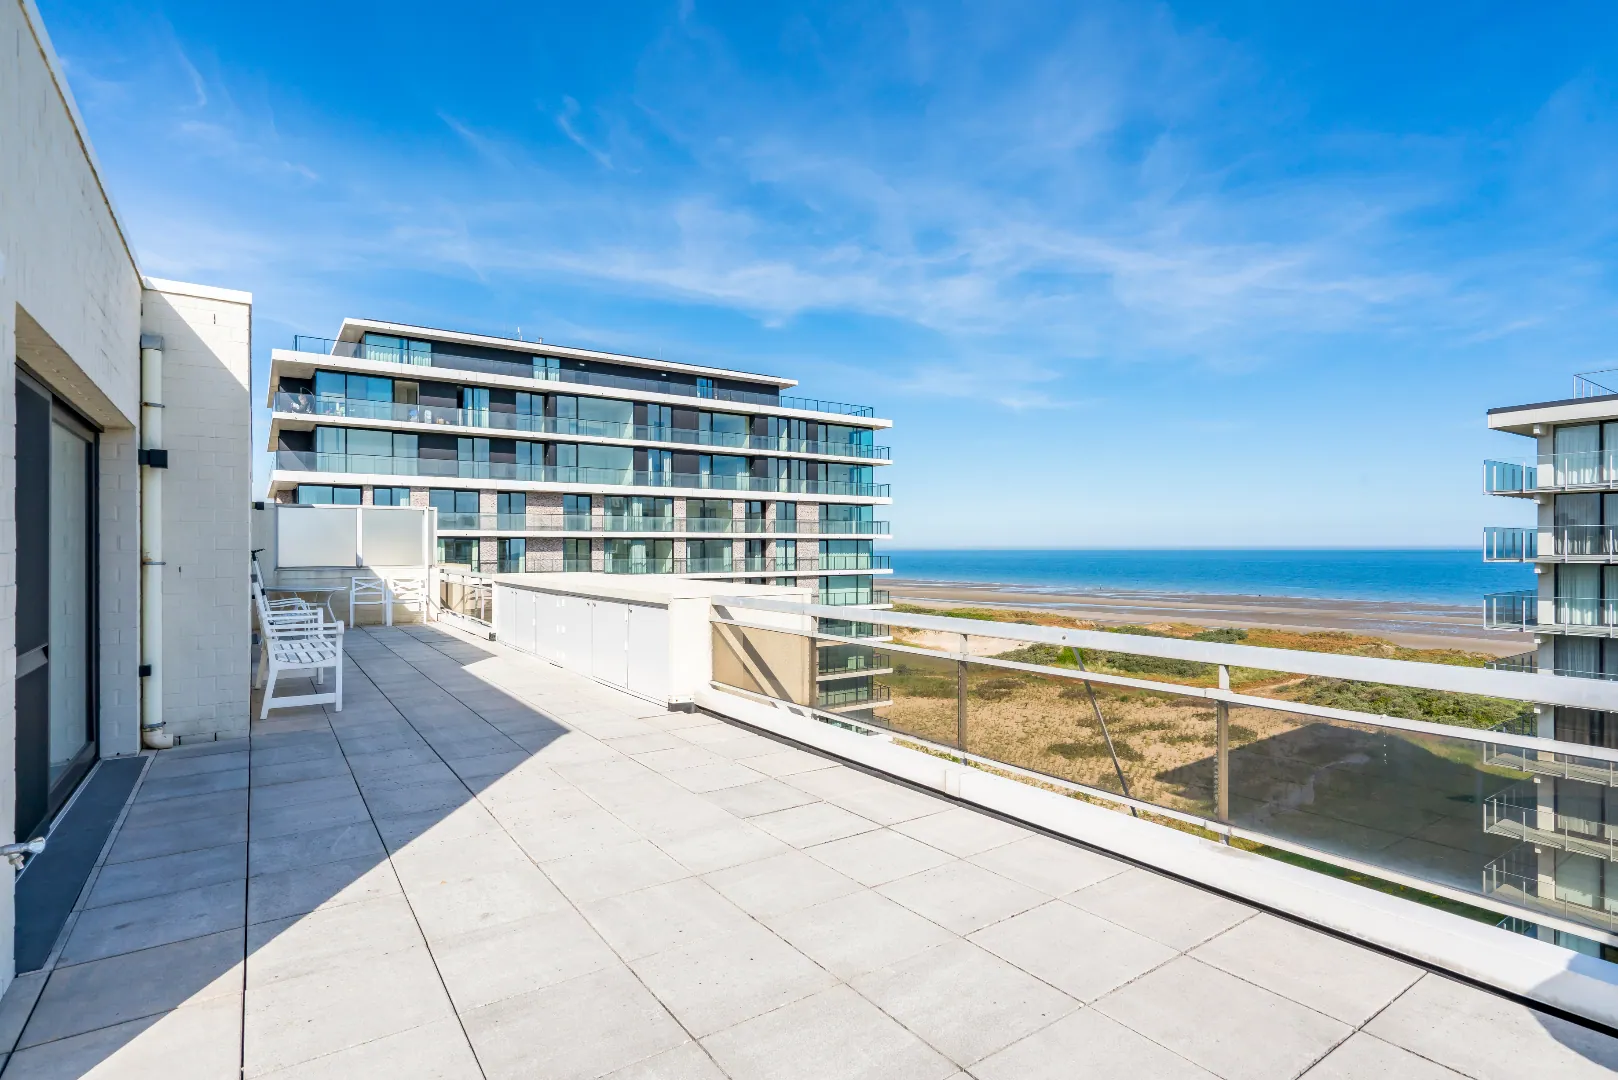 Exclusieve Penthouse met panoramisch zicht in De Panne met totale opp. van 300 m²